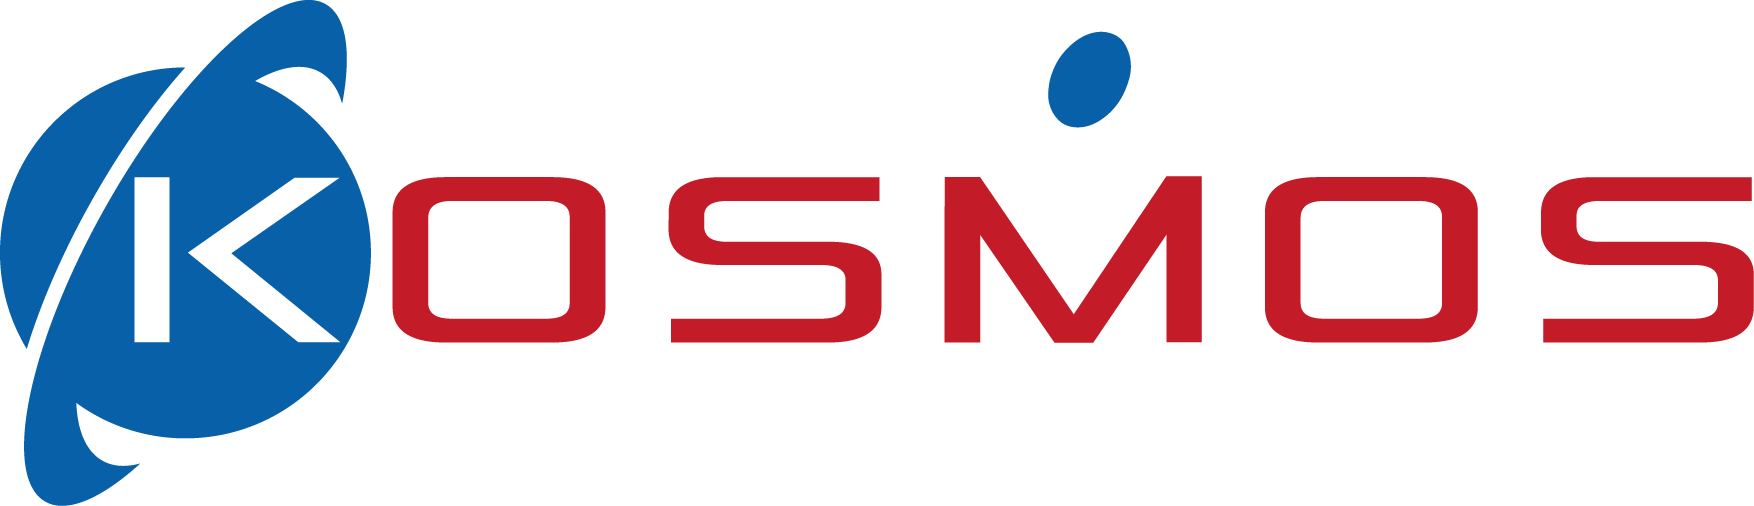 Kubotek Kosmos White Logo